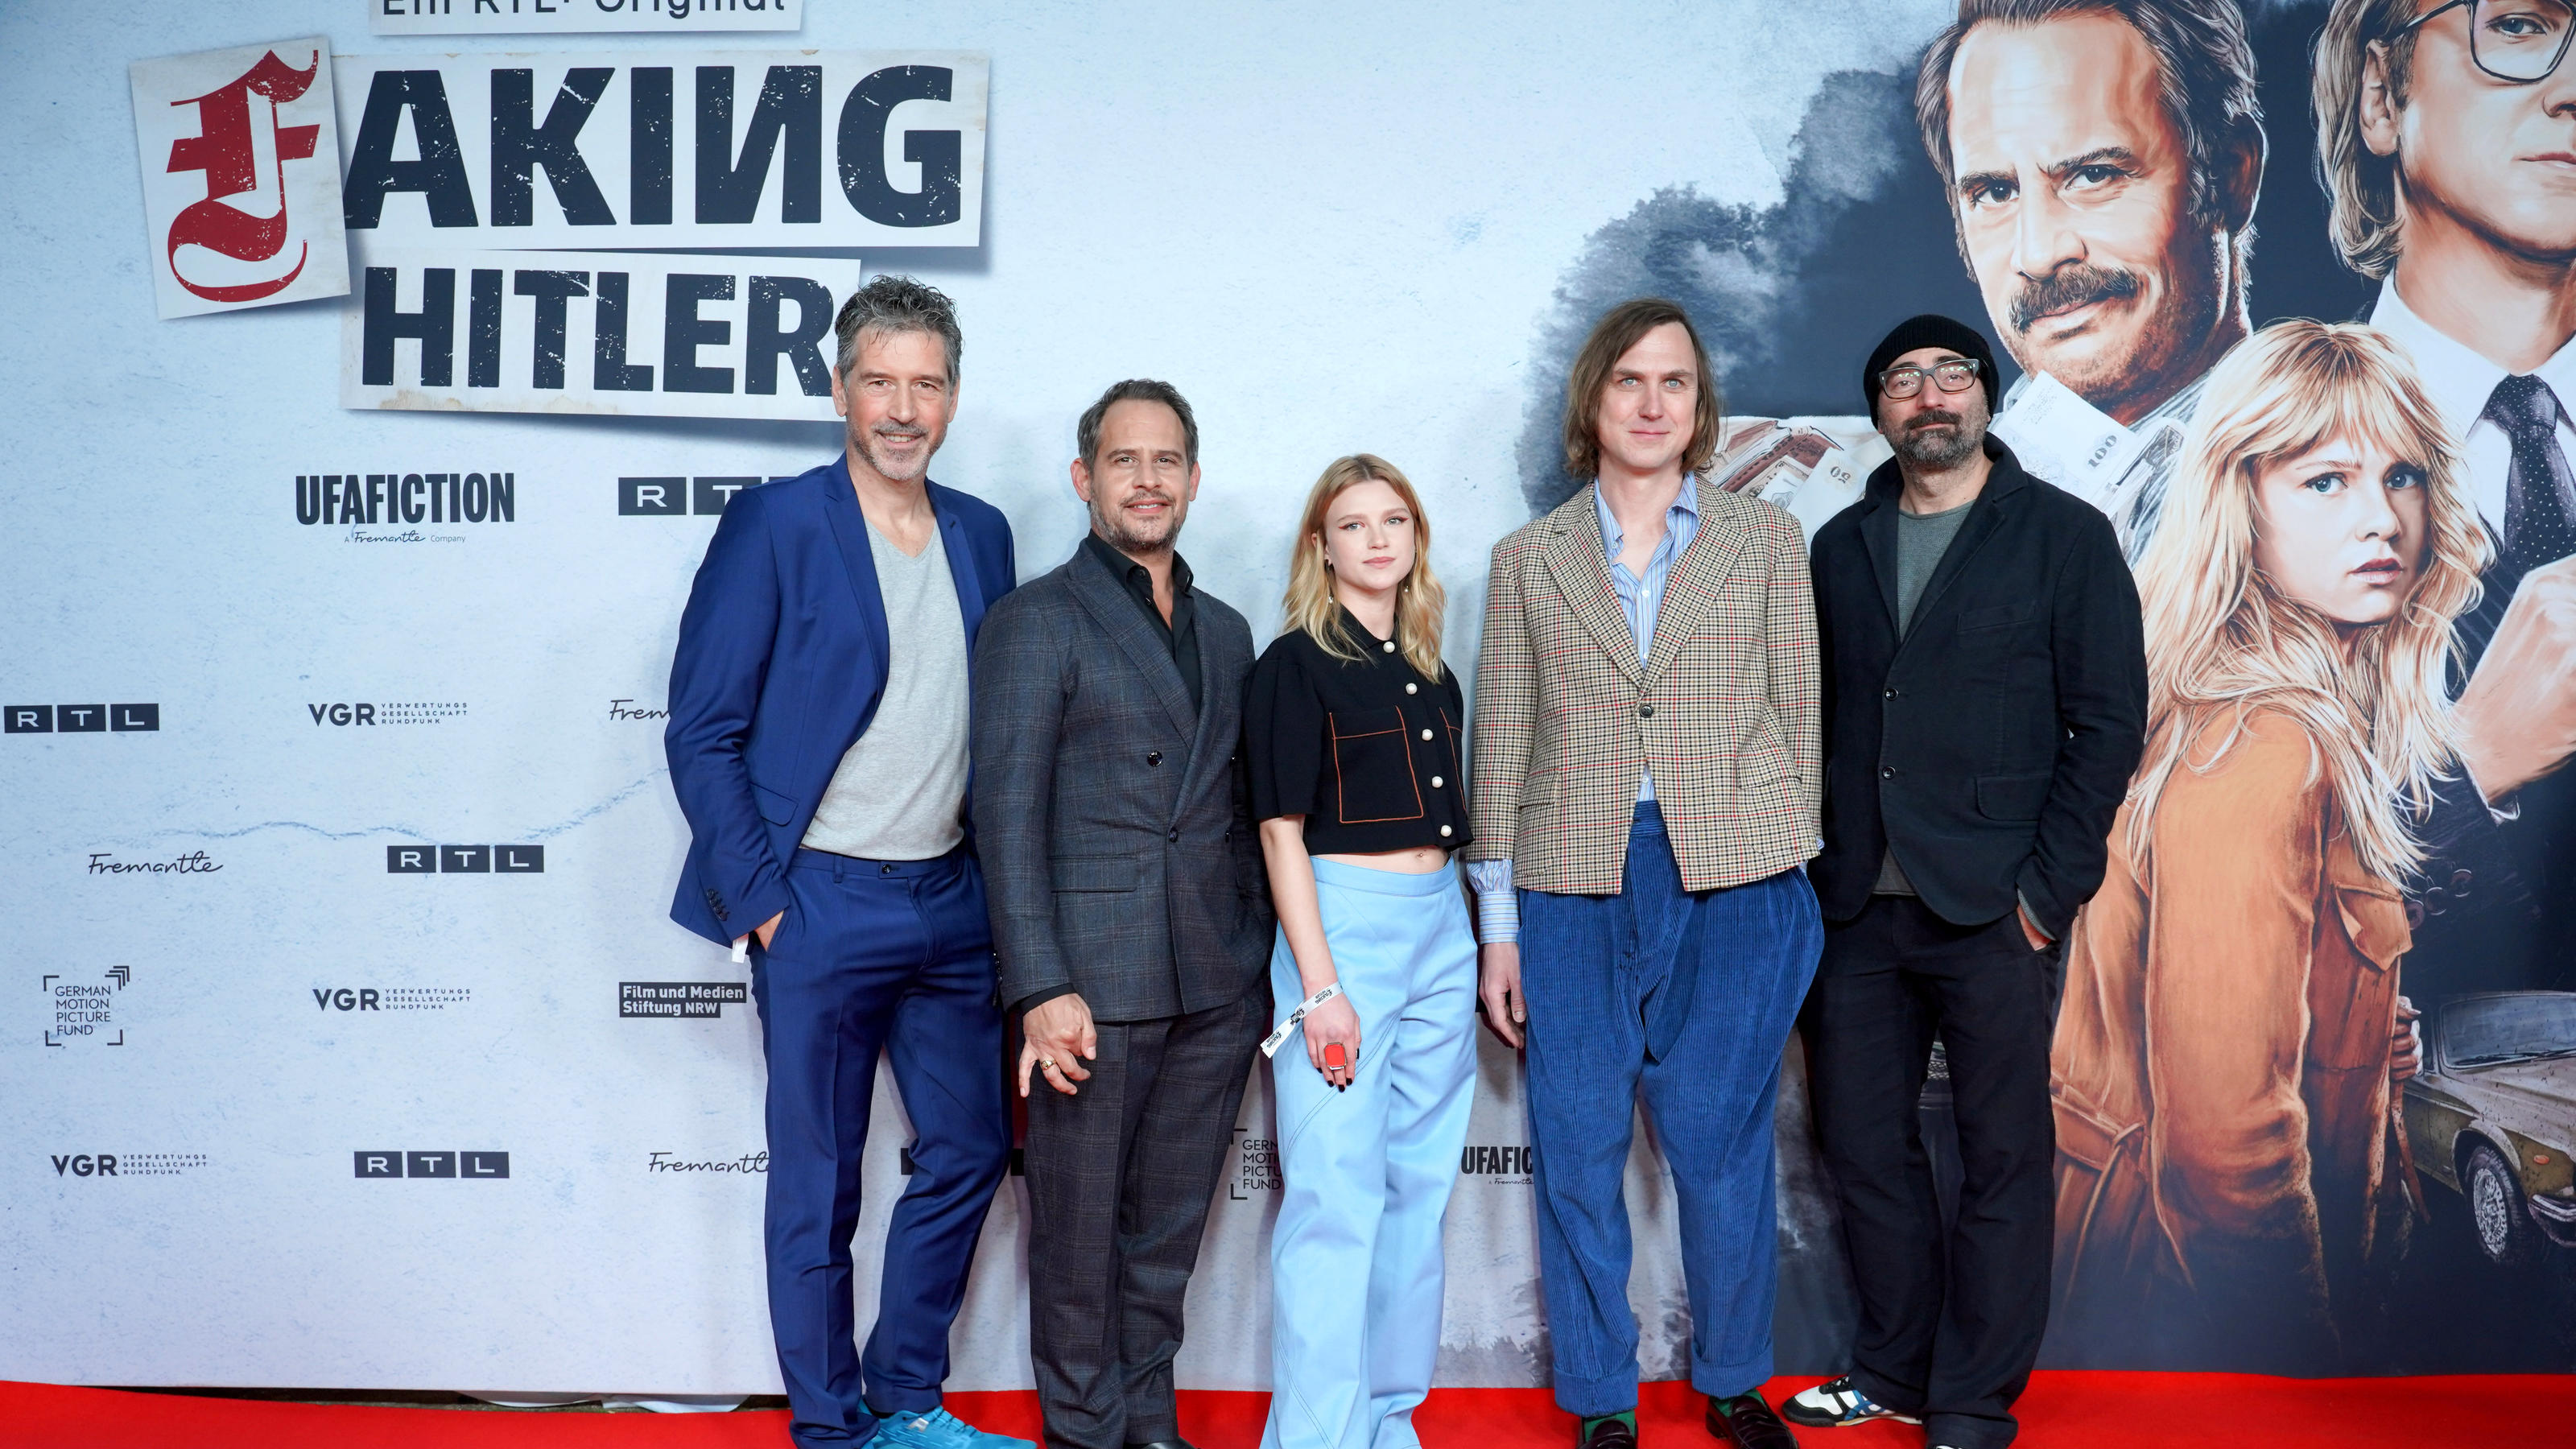 Die Regisseure Wolfgang Gross (l) und Tobi Baumann (r) und die Schauspieler Moritz Bleibtreu (2.v.l-r), Sinja Irslinger und Lars Eidinger kommen zur Premiere der Serie "Faking Hitler".